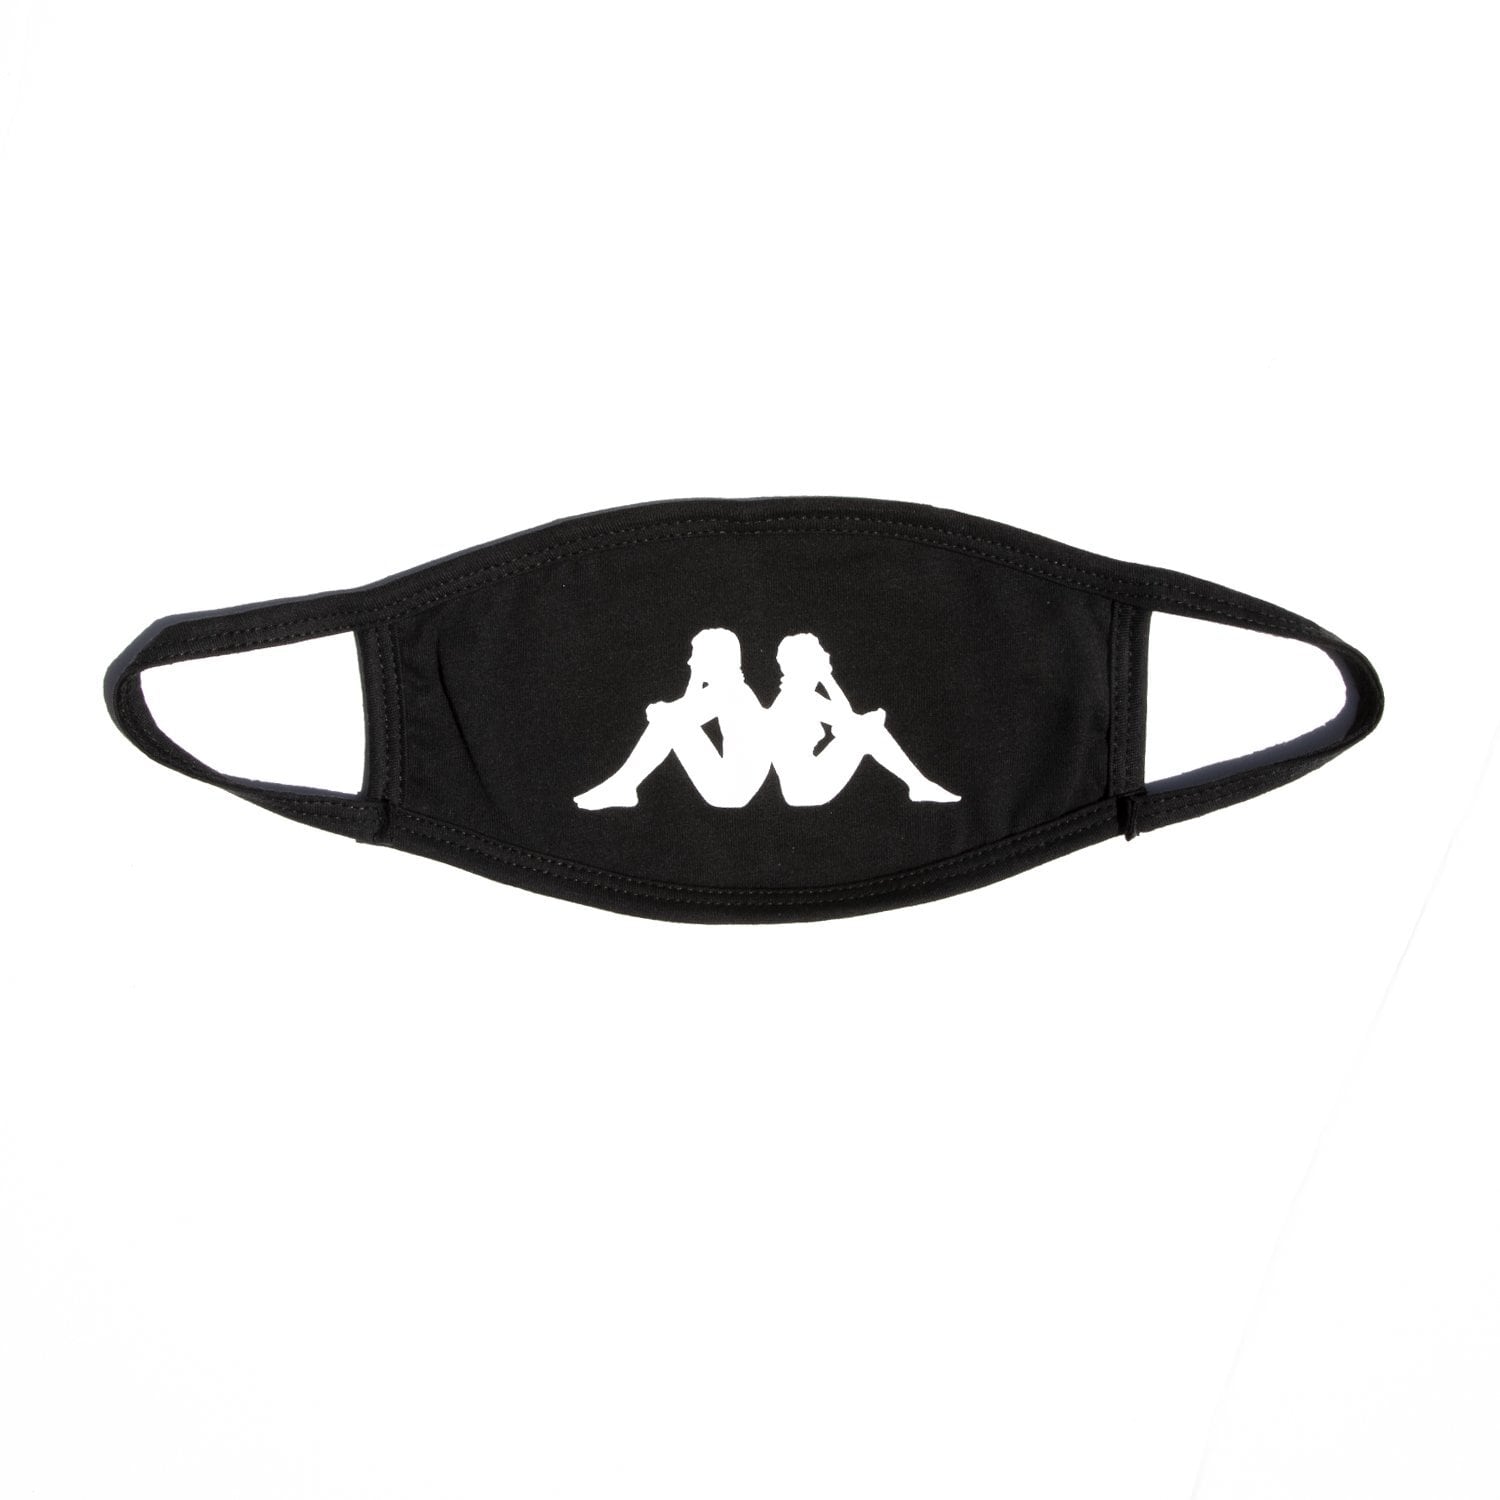 カッパ Kappa フェイスマスク 黒 公式グッズ | FREAK スポーツウェア通販・海外ブランド・日本国内未入荷・海外直輸入